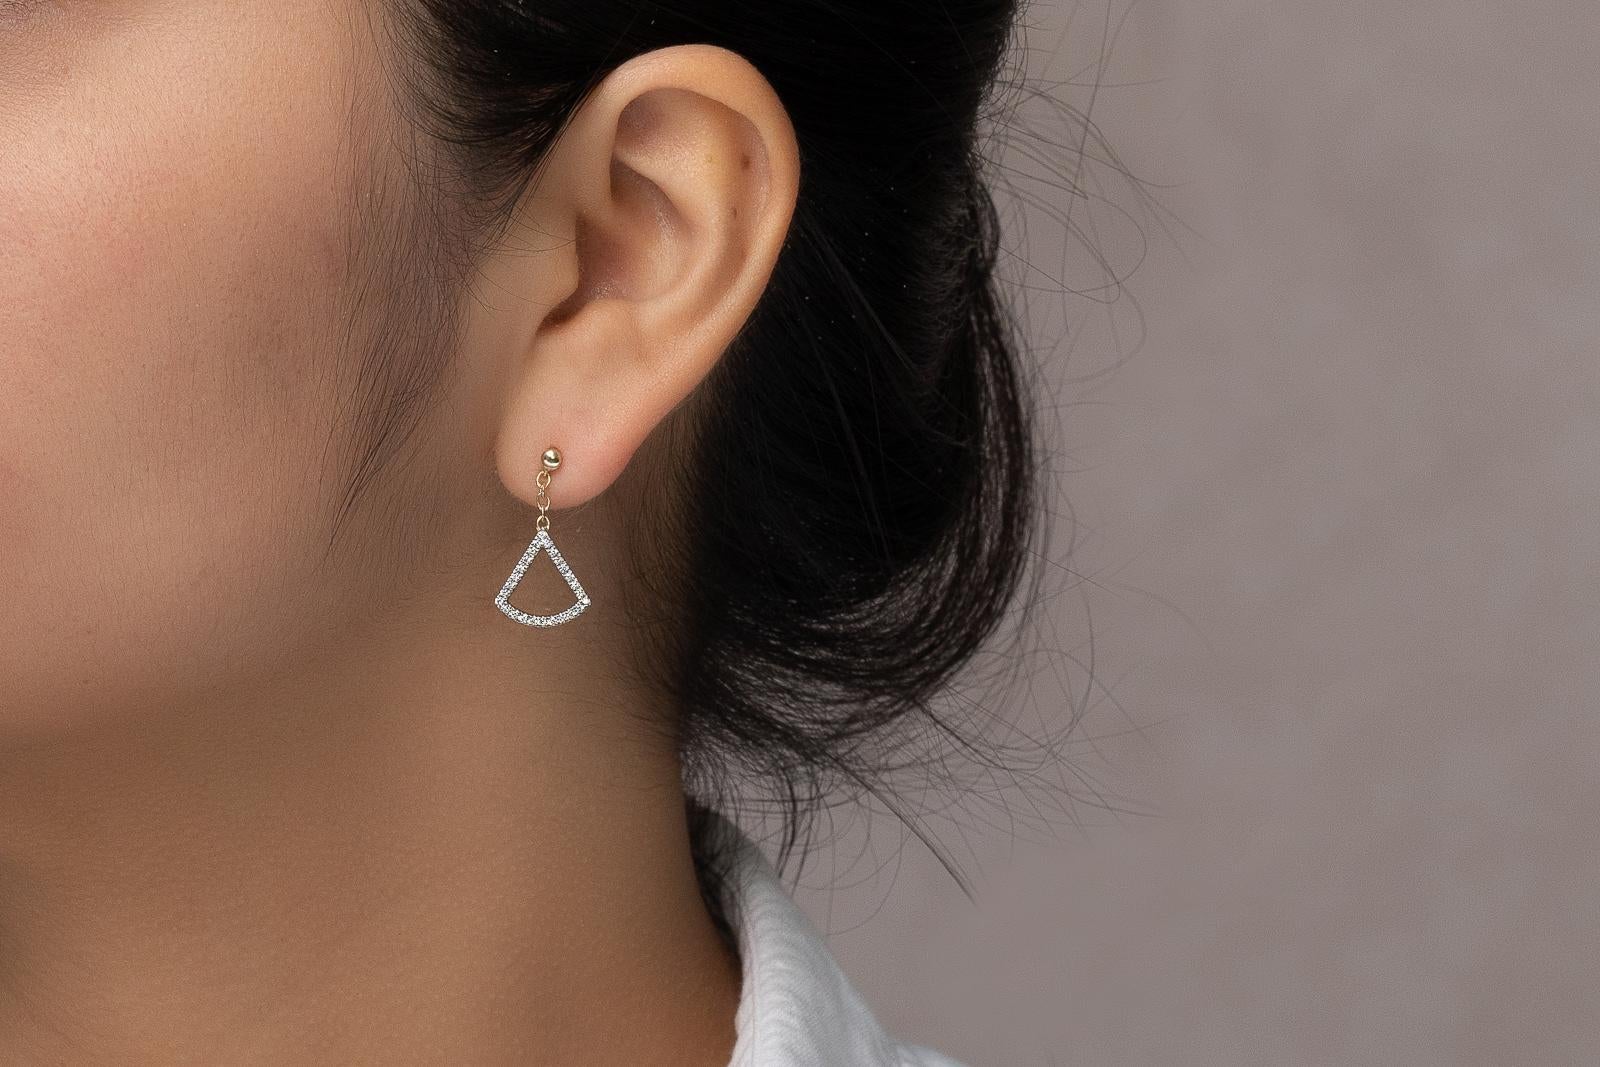 Ces boucles d'oreilles pendantes en diamant s'inspirent des feuilles en forme d'éventail de l'arbre Ginkgo. Ces boucles d'oreilles uniques sont disponibles en or jaune 14K et en or blanc 14K.

Boucles d'oreilles en or jaune 14K à diamant